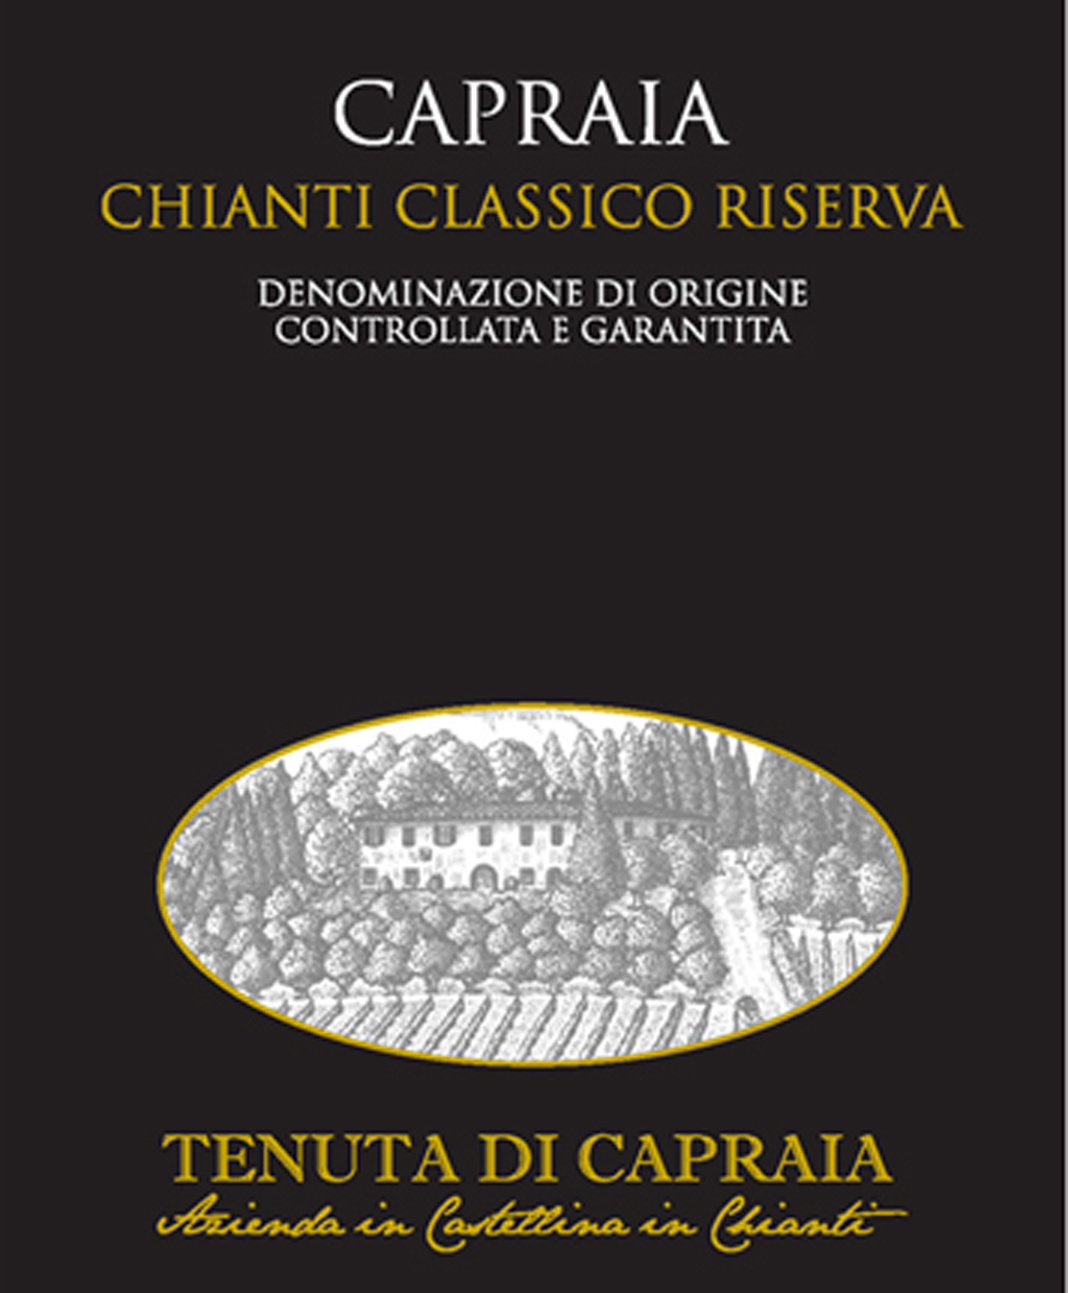 Tenuta di Capraia - Chianti Classico Riserva label